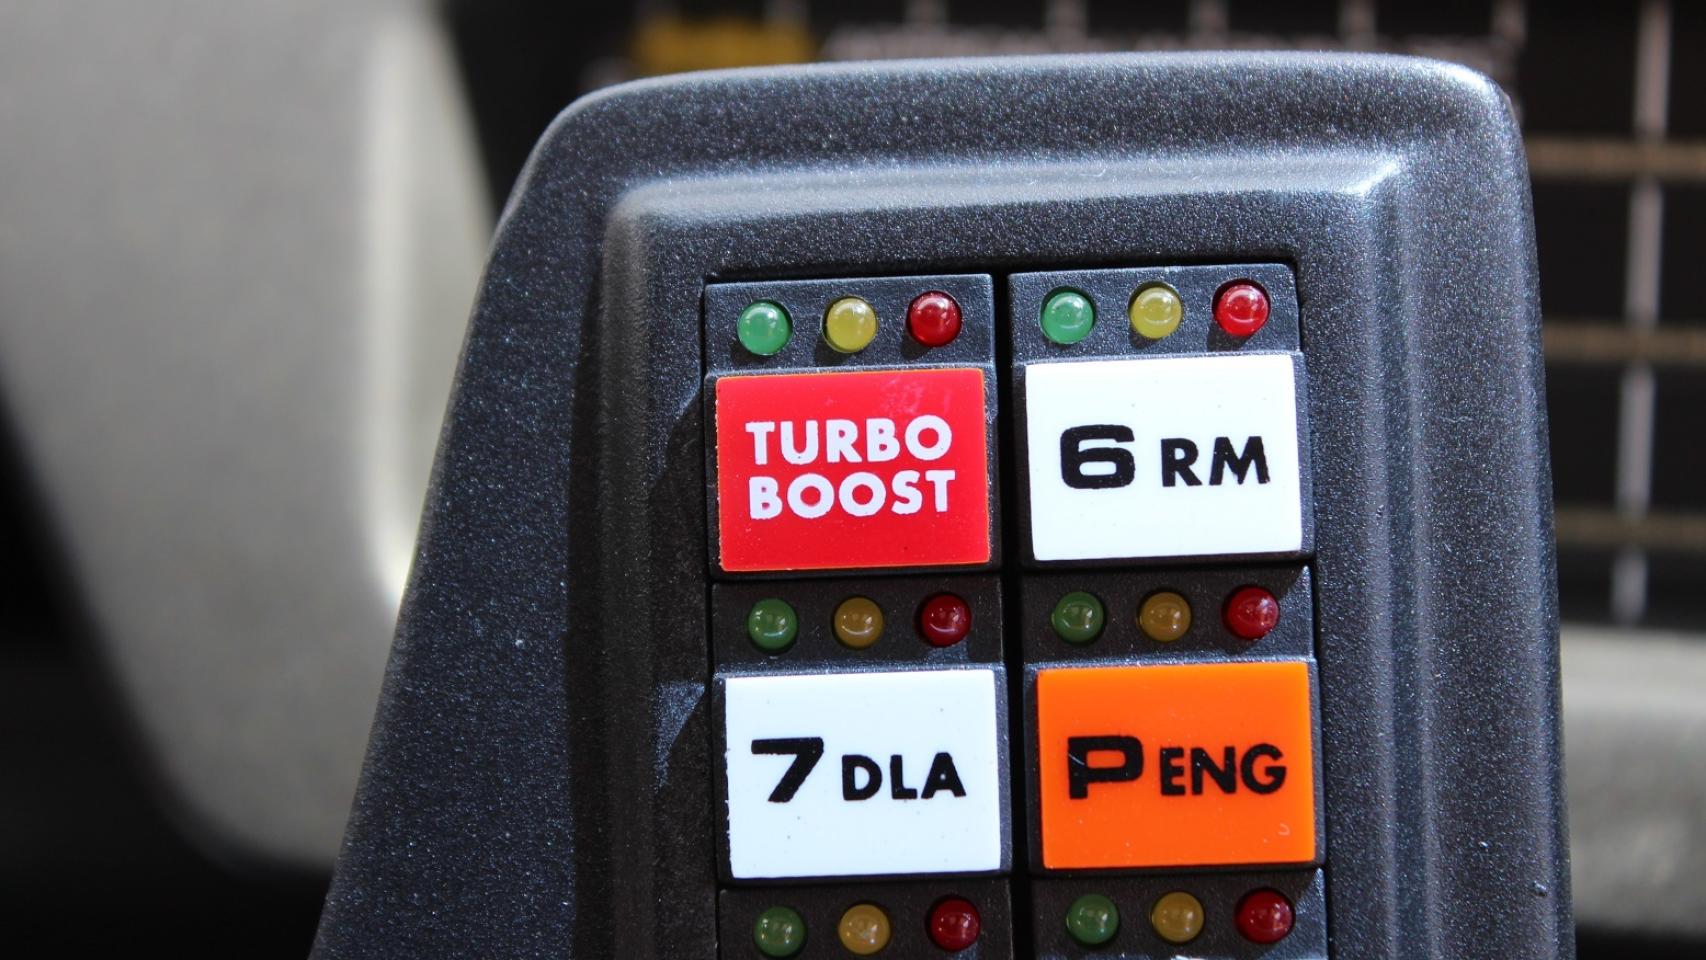 El Kitt de Sabadell también tiene el botón de Turbo Boost, pero no puede saltar como hacía el original